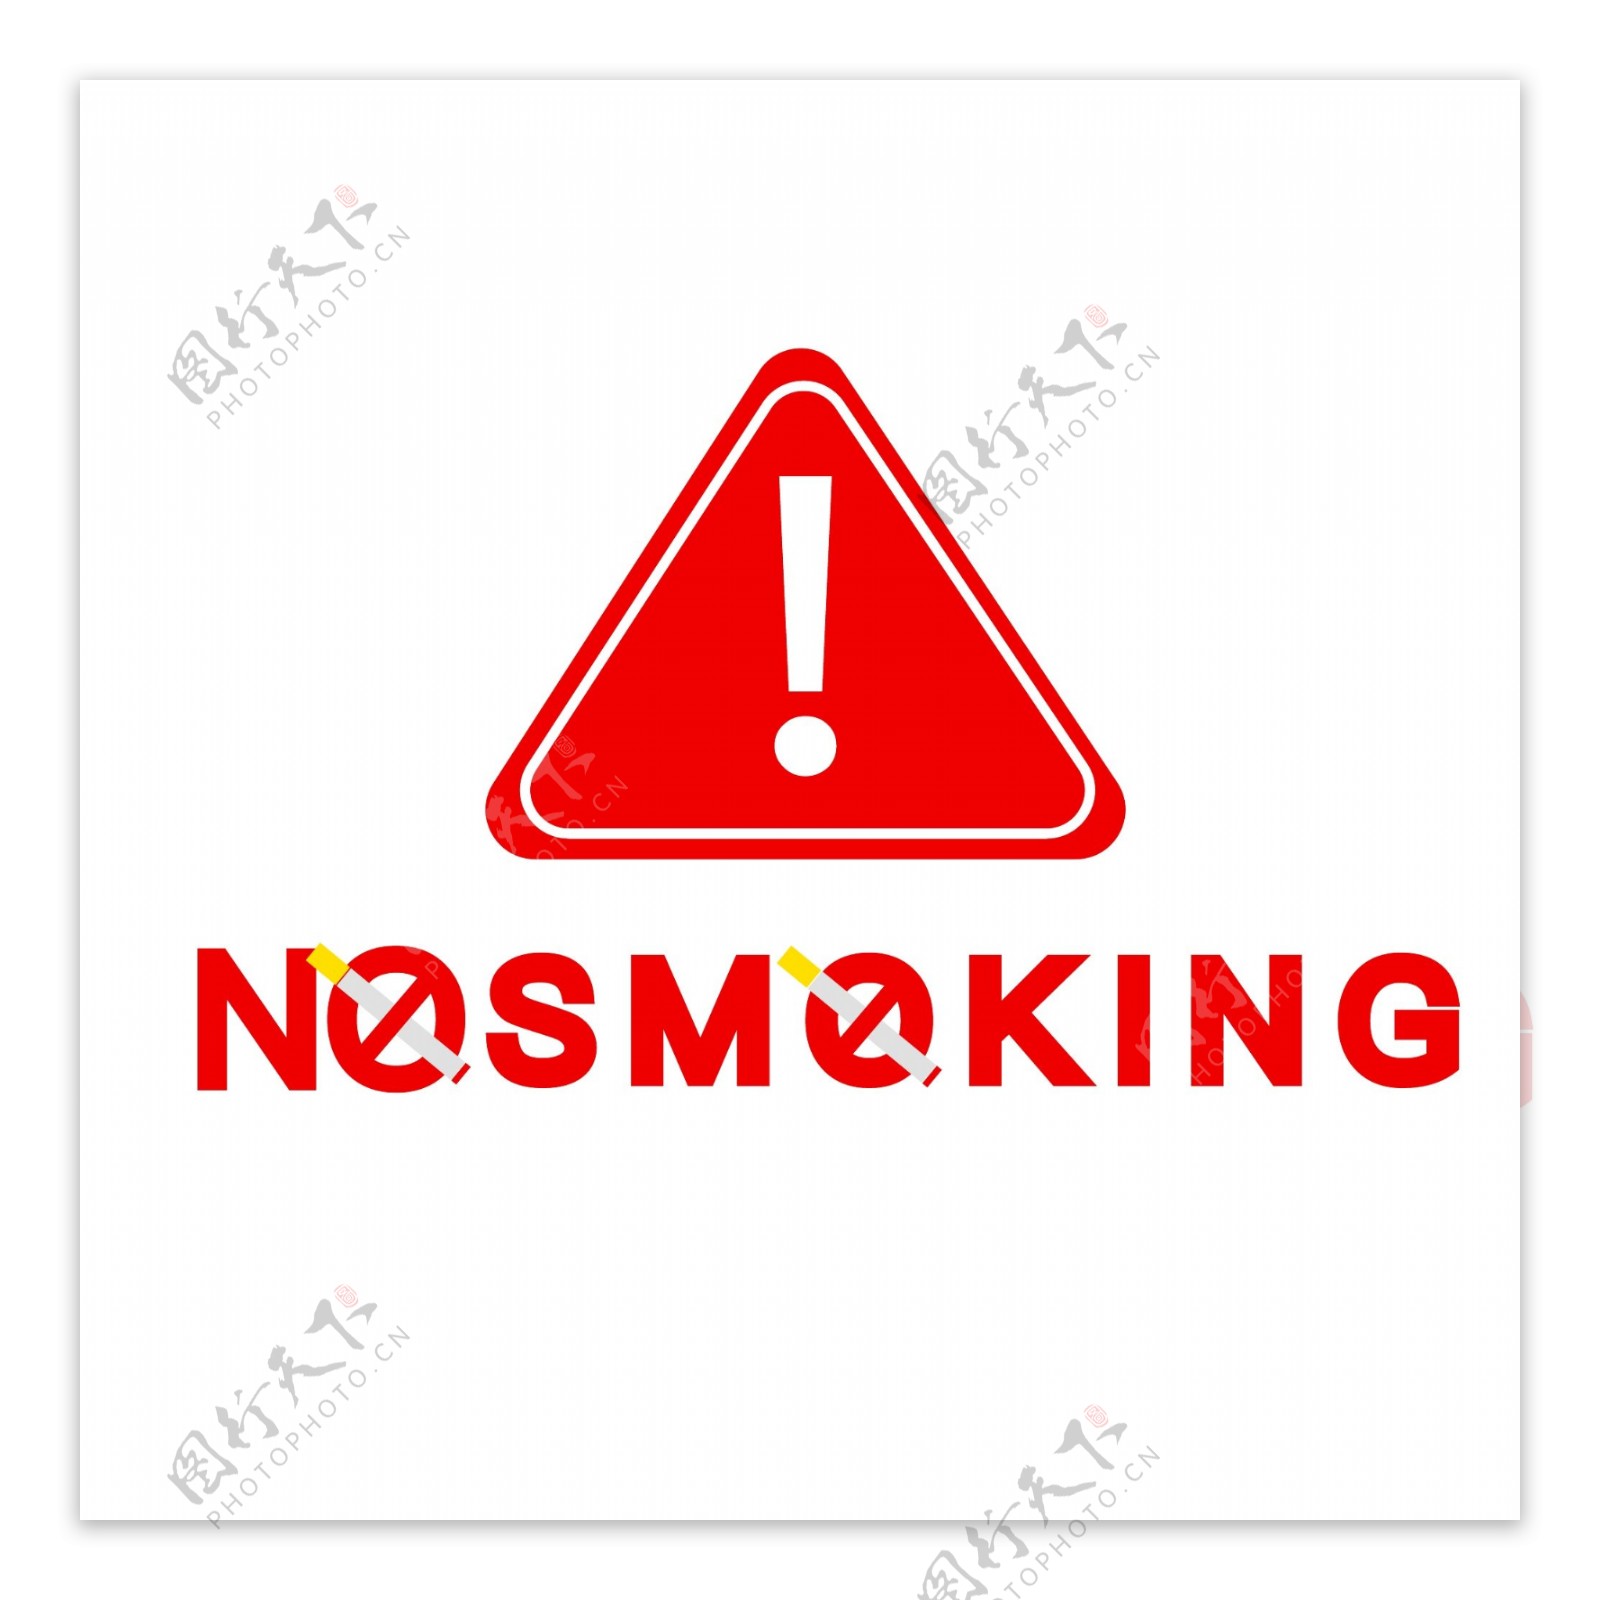 禁止吸烟提示元素设计